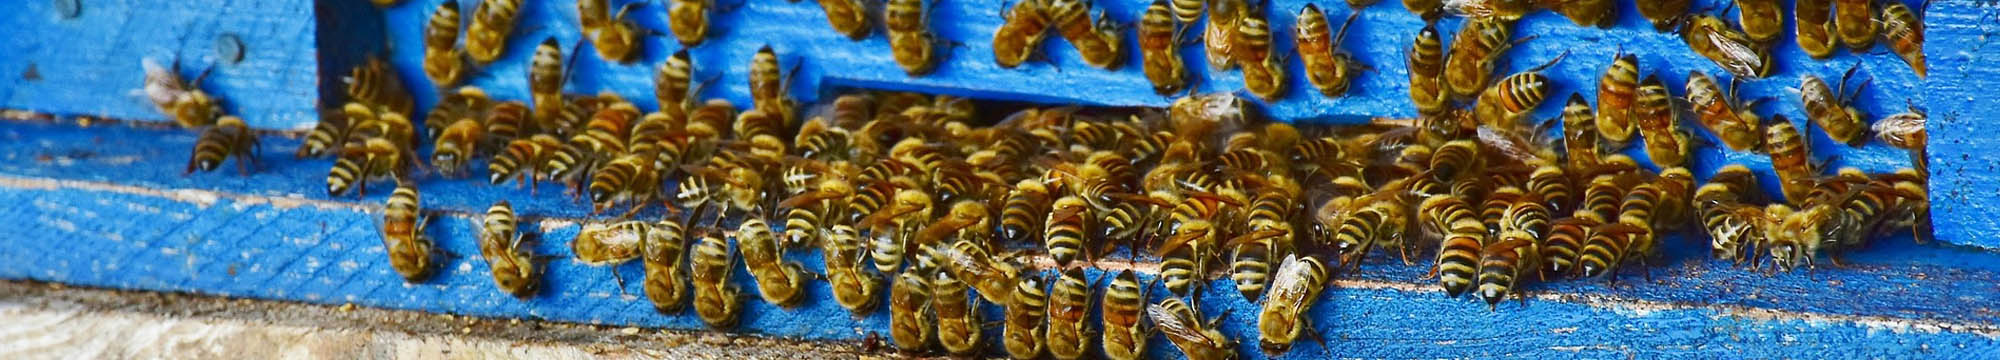 Sarum Bee Supplies Wiltshire bee pollenating